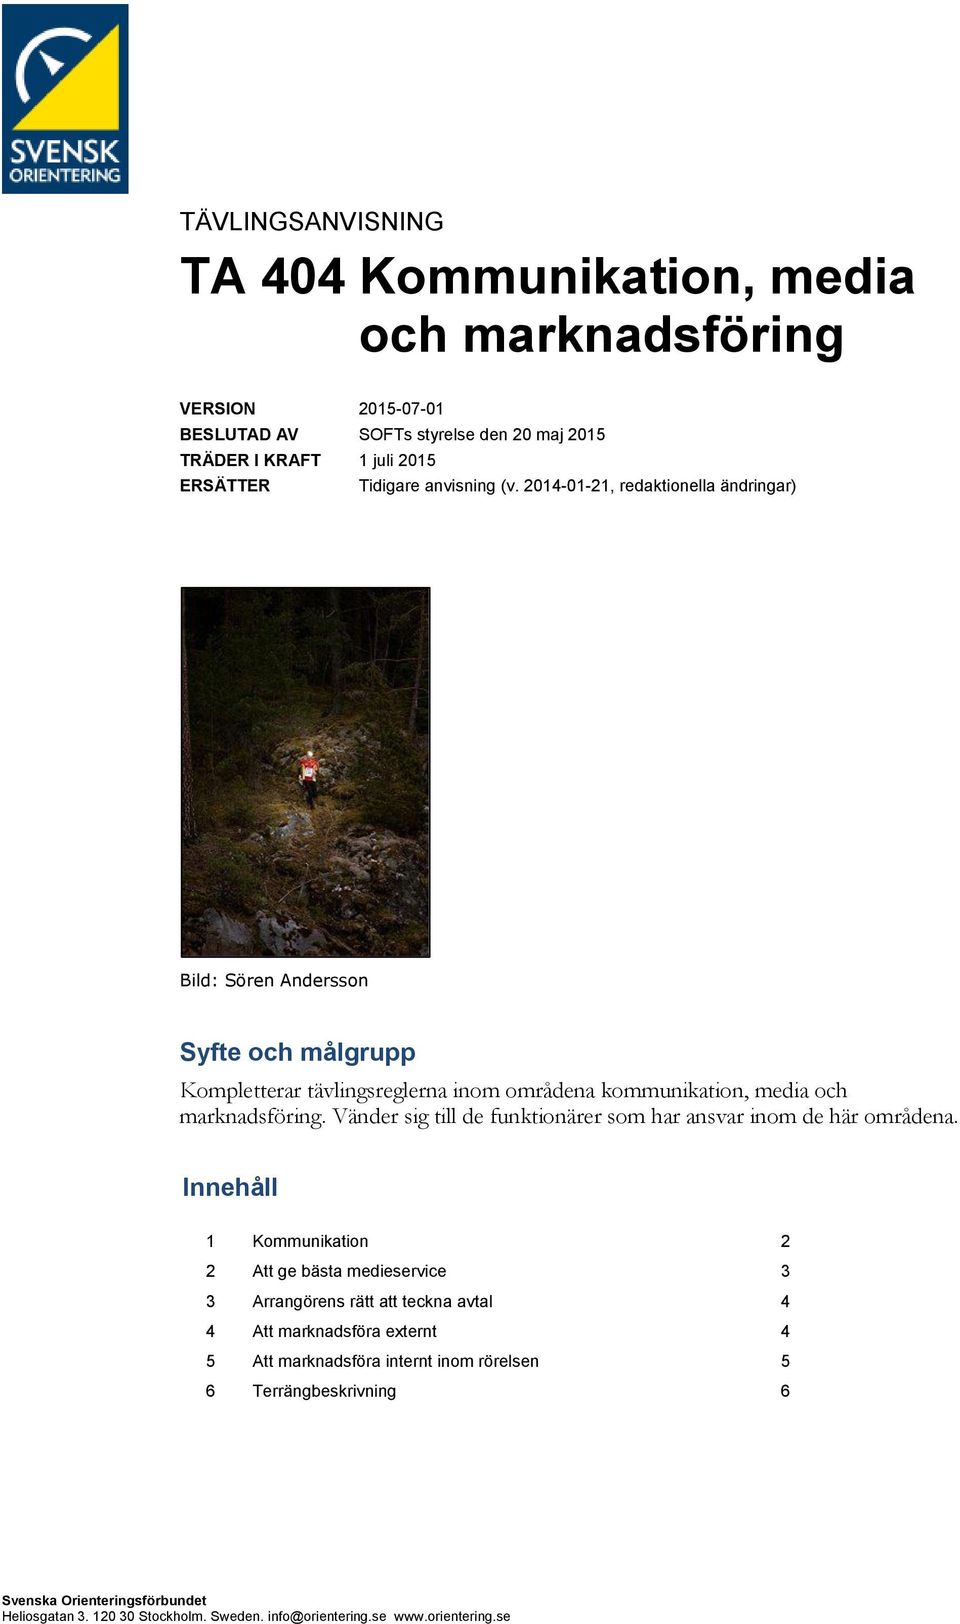 2014-01-21, redaktionella ändringar) Bild: Sören Andersson Syfte och målgrupp Kompletterar tävlingsreglerna inom områdena kommunikation, media och marknadsföring.